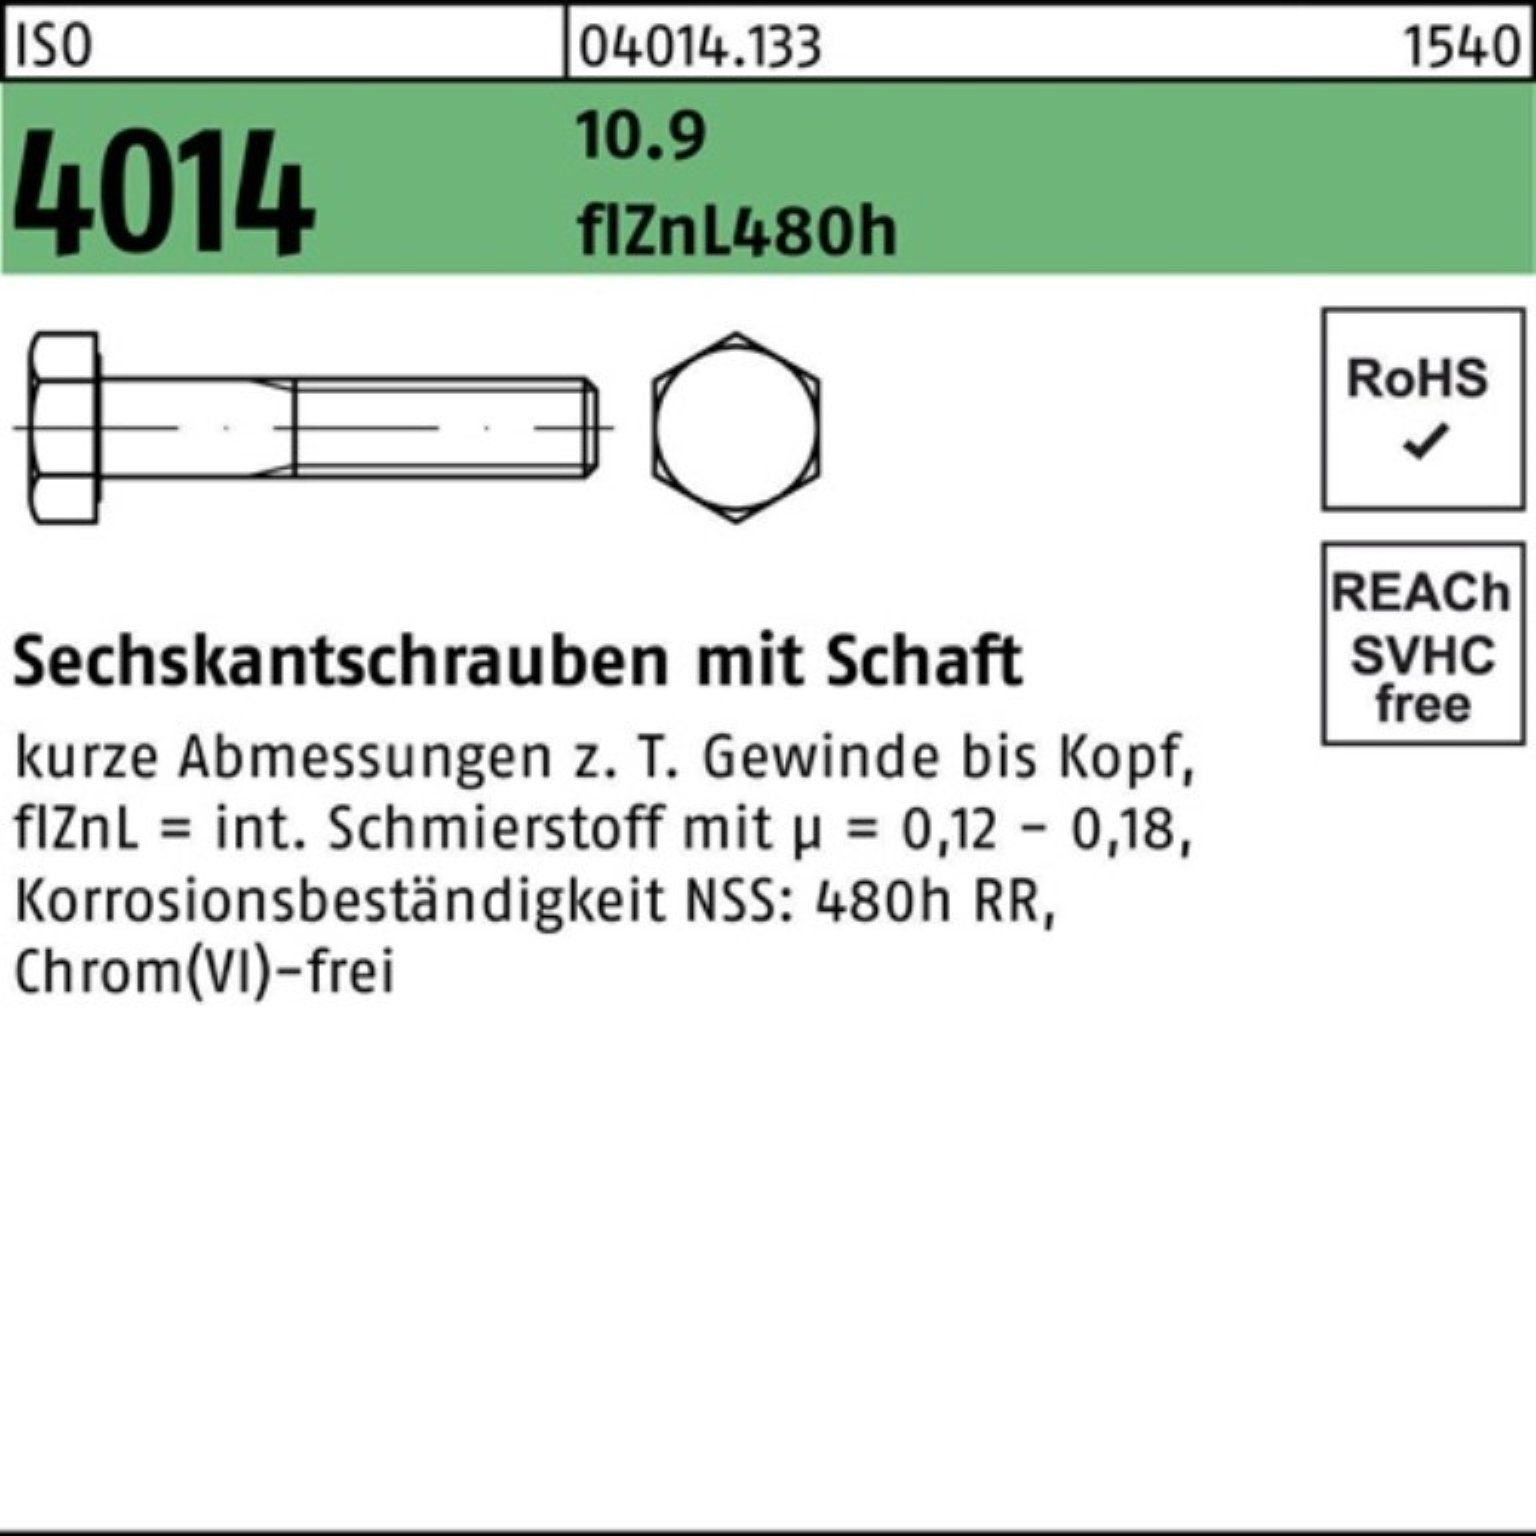 Schaft ISO Bufab 10.9 Sechskantschraube 4014 100er Sechskantschraube zinklamelle 105 Pack M20x